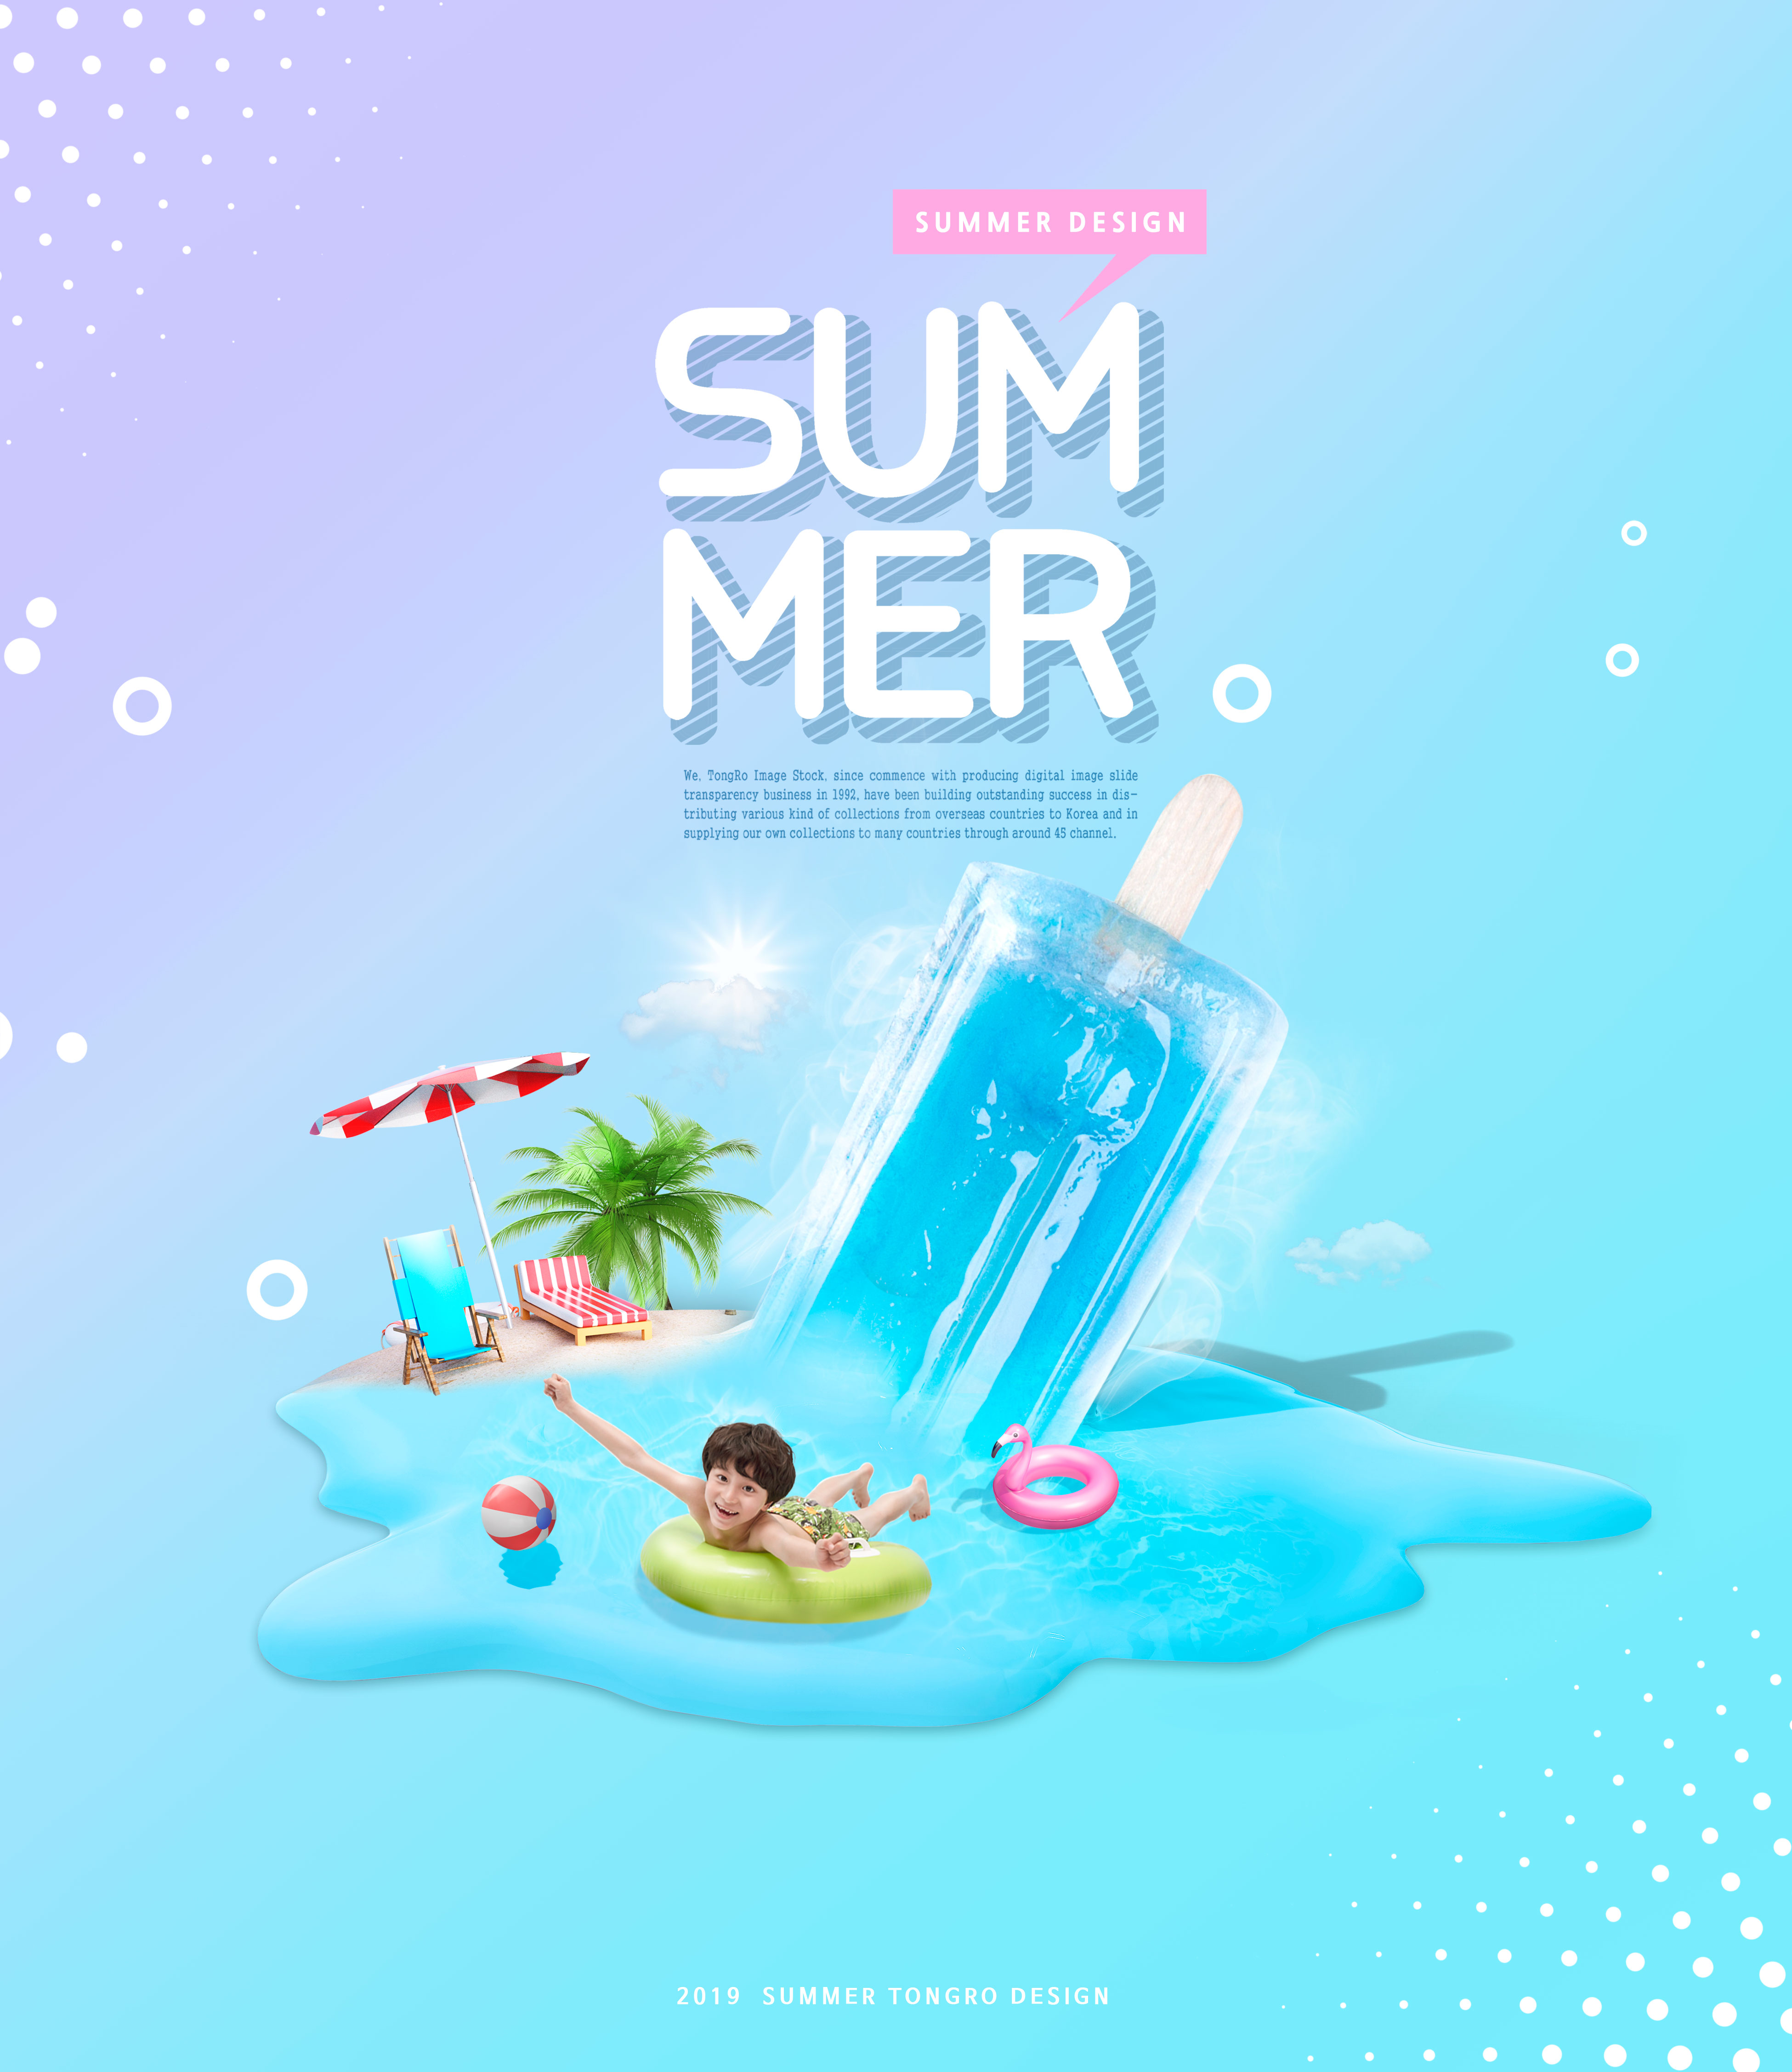 夏日暑假主题活动创意海报设计模板插图